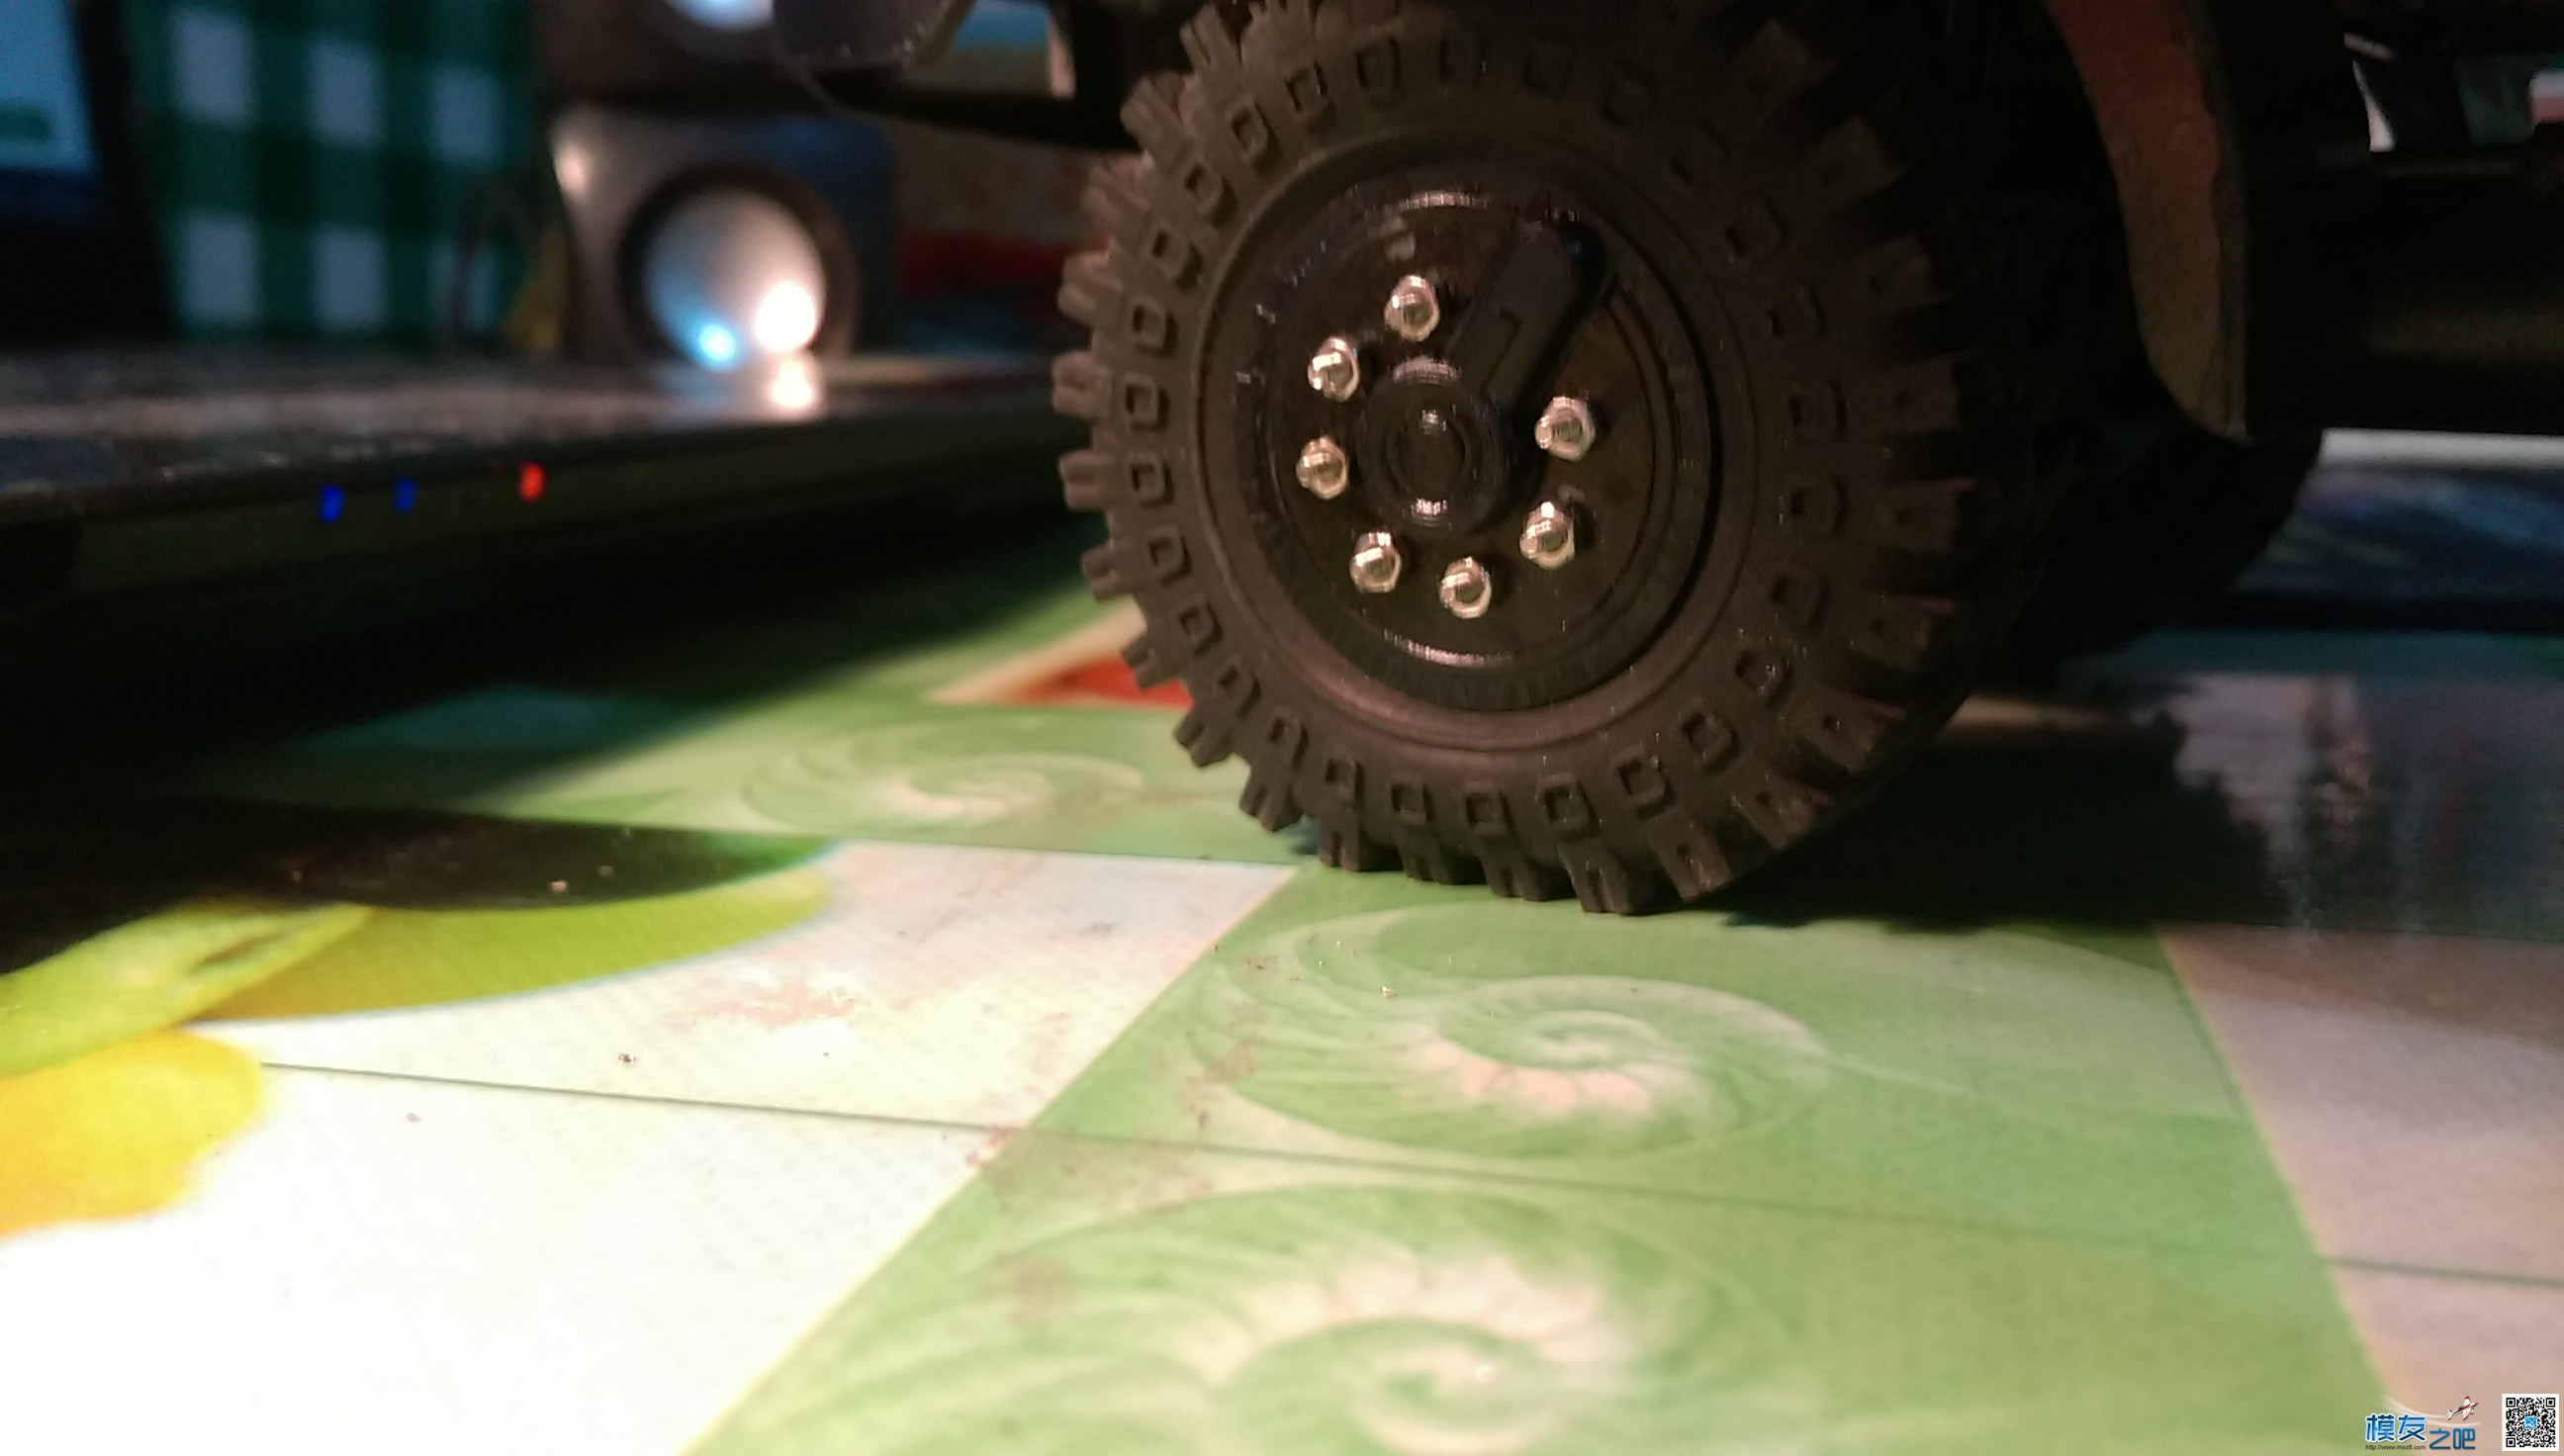 太脱拉第二弹—1:20太脱拉达喀尔沙漠卡车 3D打印,图纸 作者:德克斯特 8515 